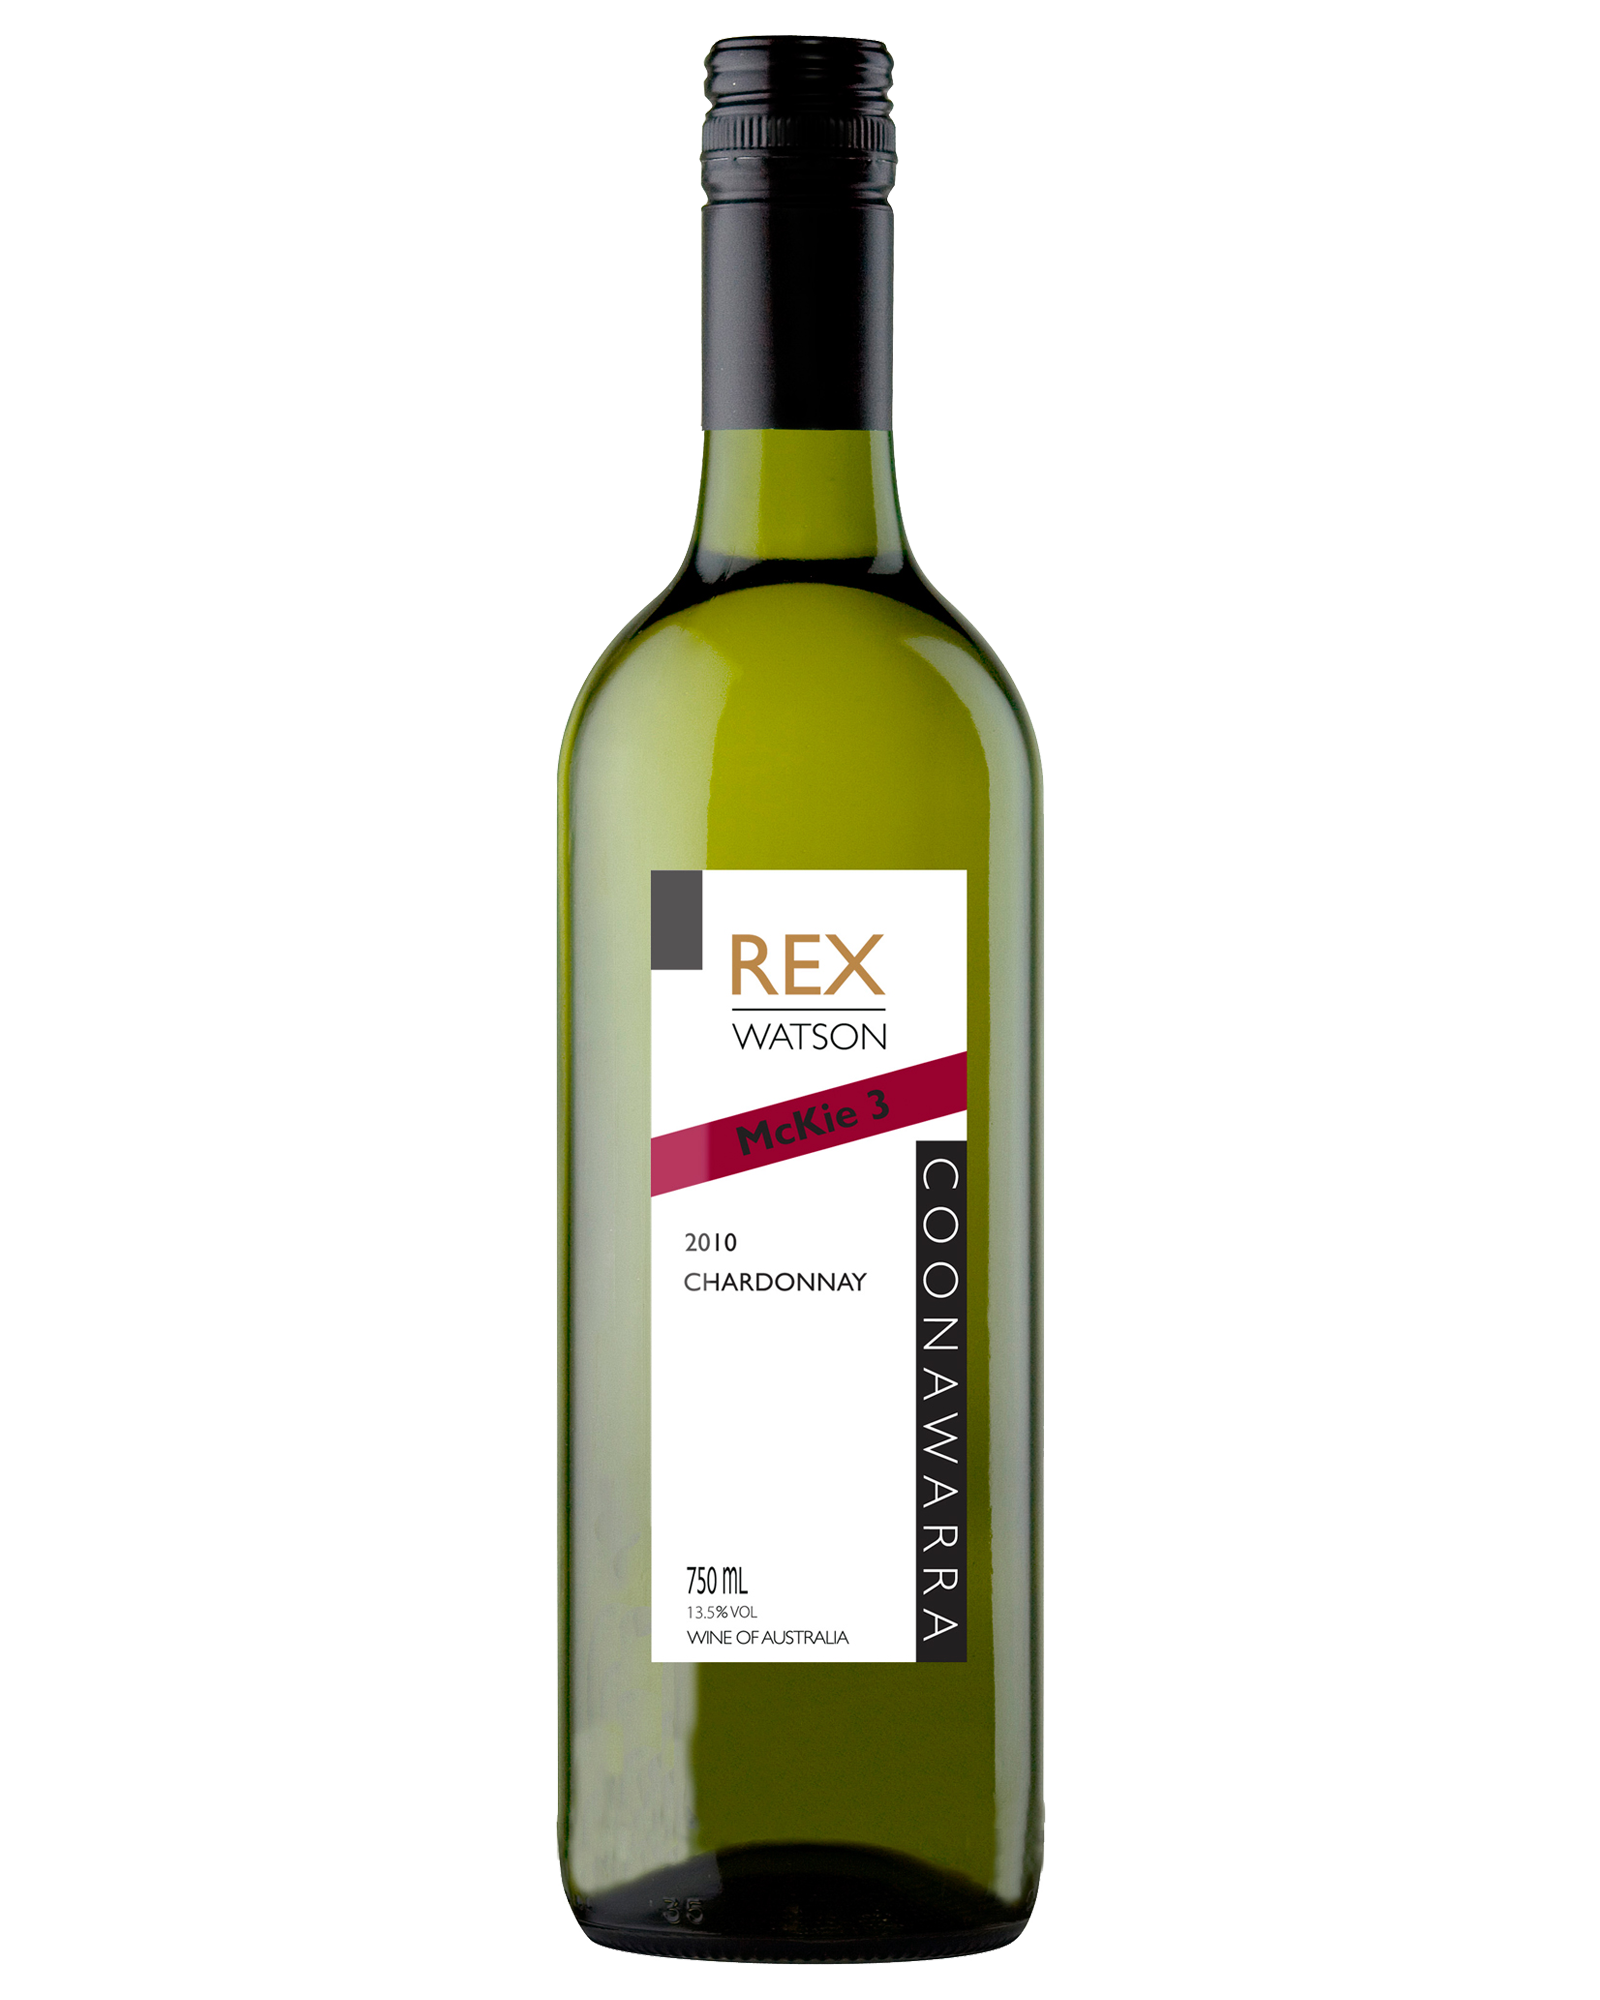 Rex Watson McKie 3 Chardonnay